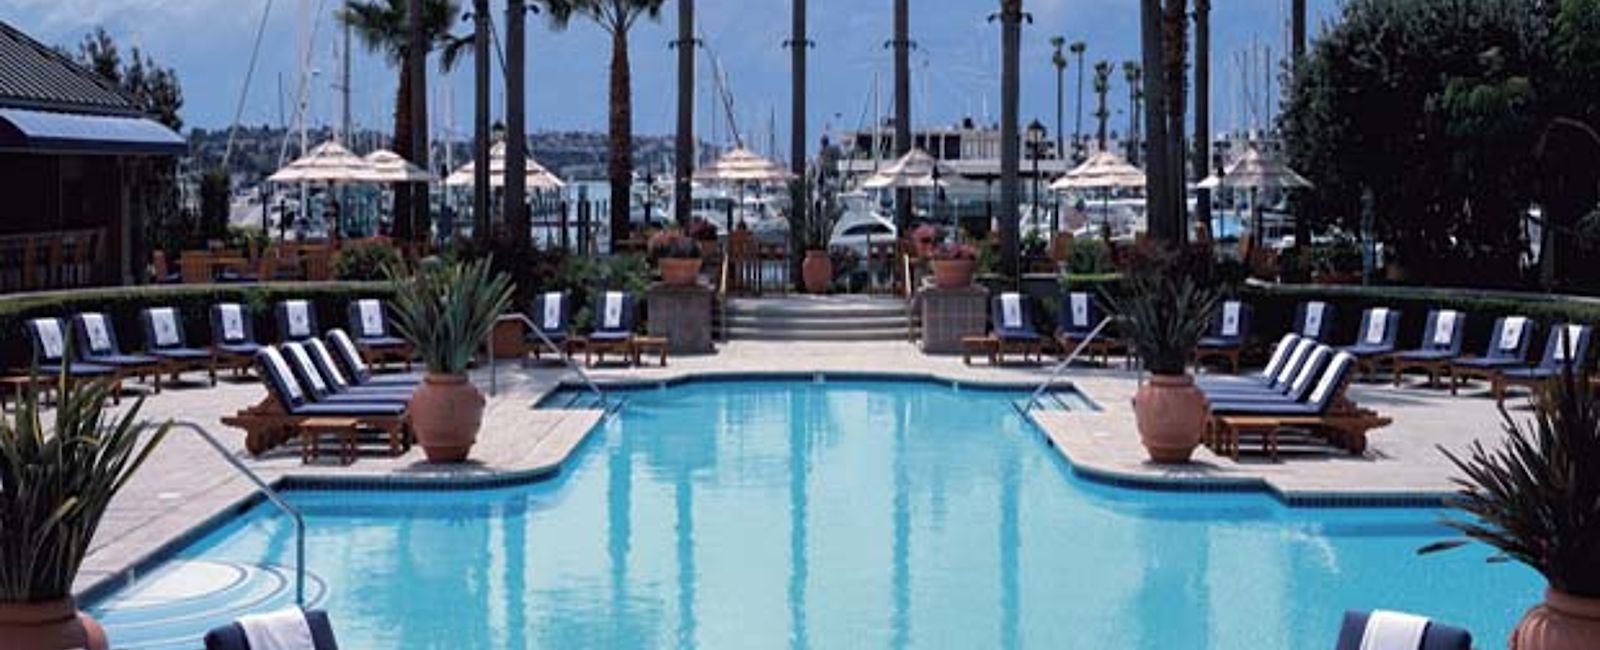 HOTEL TIPPS
 The Ritz-Carlton, Marina del Rey 
 Flitterwochen Reise direkt am Strand von Los Angeles 